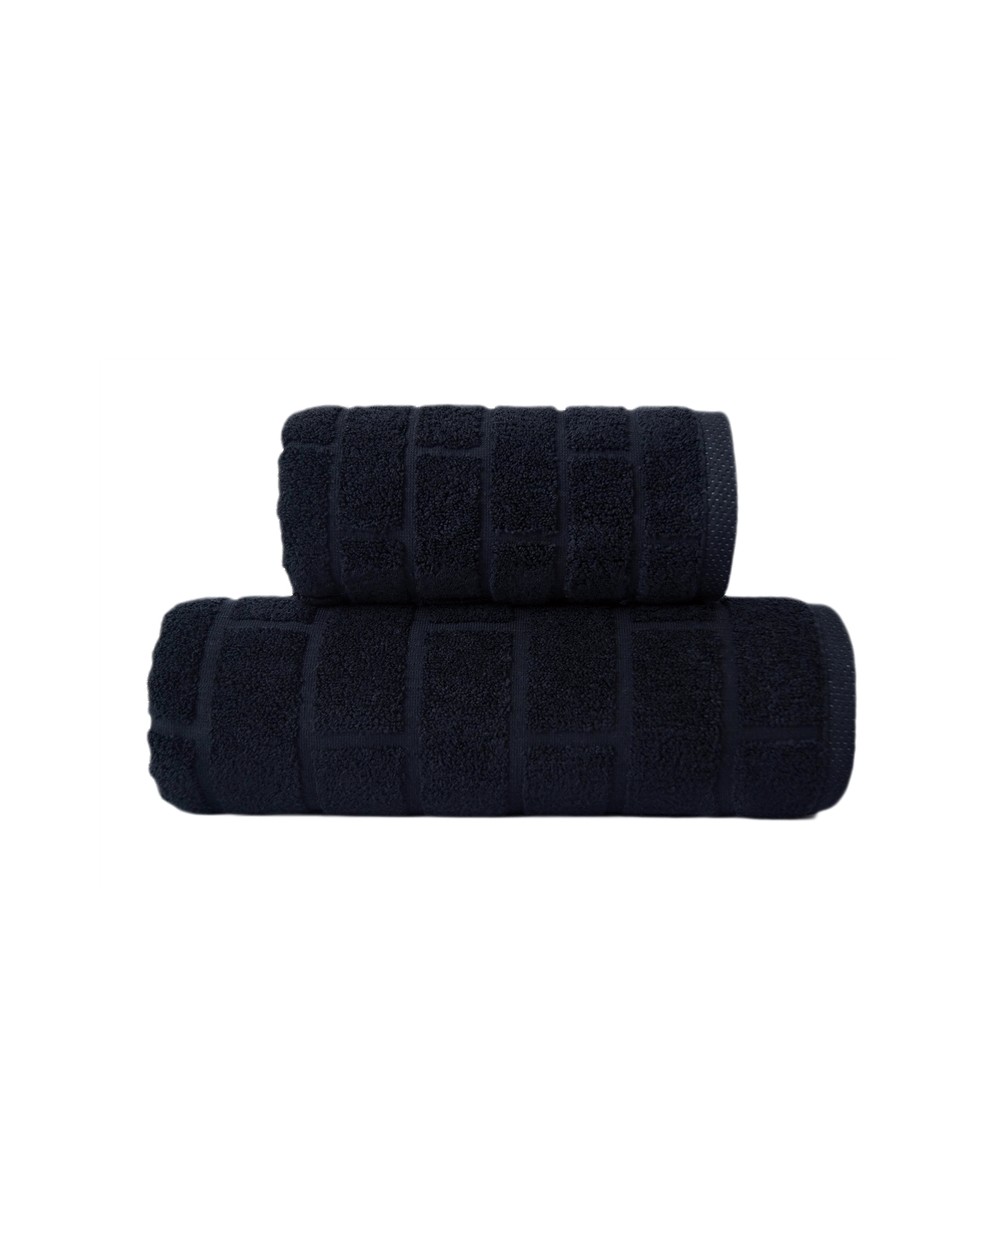 Ręcznik Brick mikrobawełna 50x90 czarny